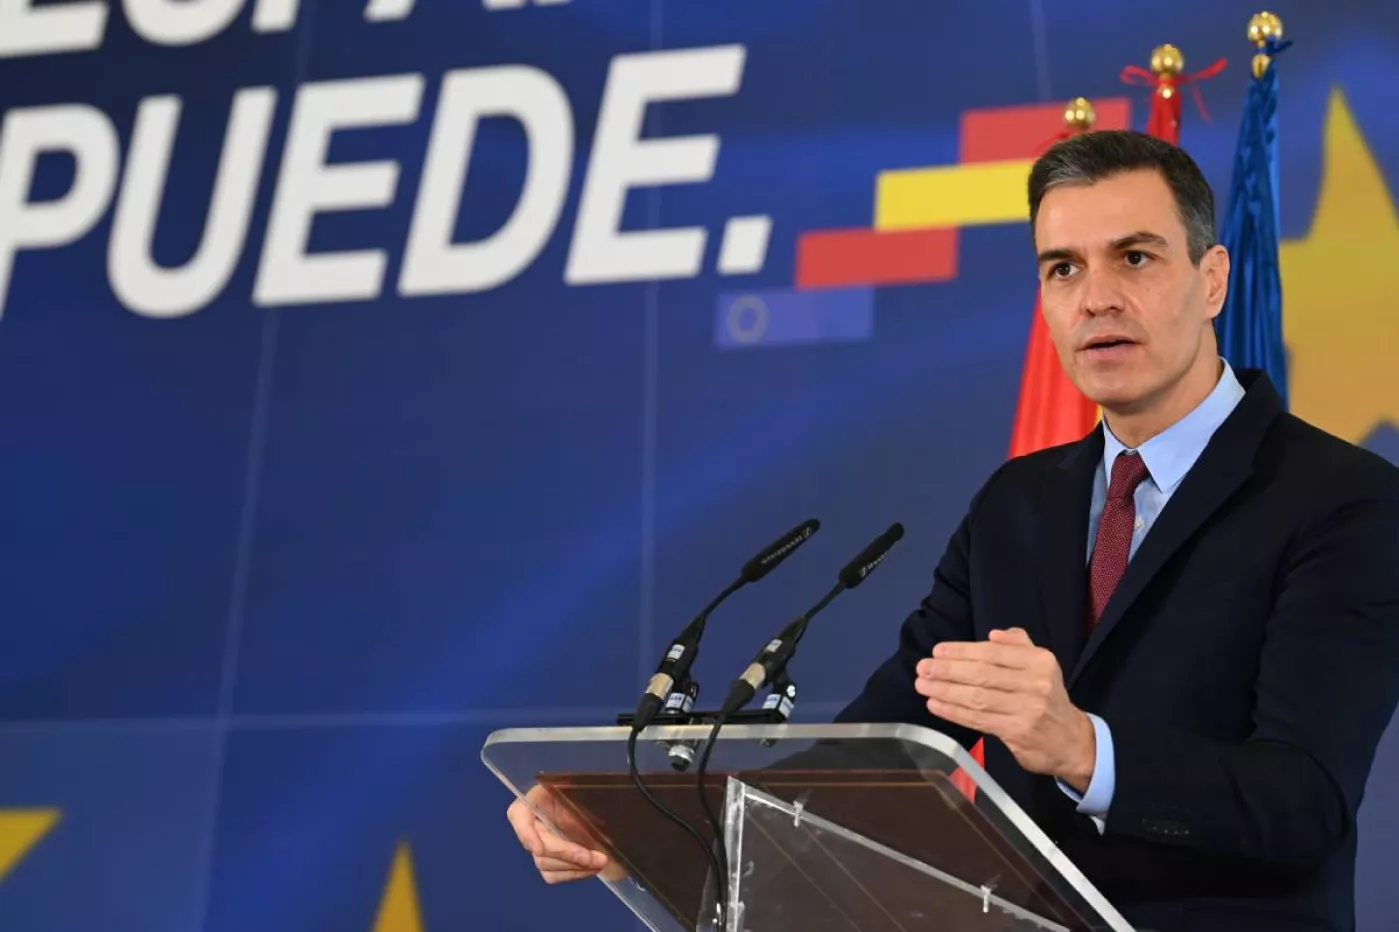 El presidente del Gobierno, Pedro Sánchez, tras anunciar las plazas de la convocatoria MIR, EIR y FIR 2021 (Moncloa/Borja Puig de la Bellacasa)